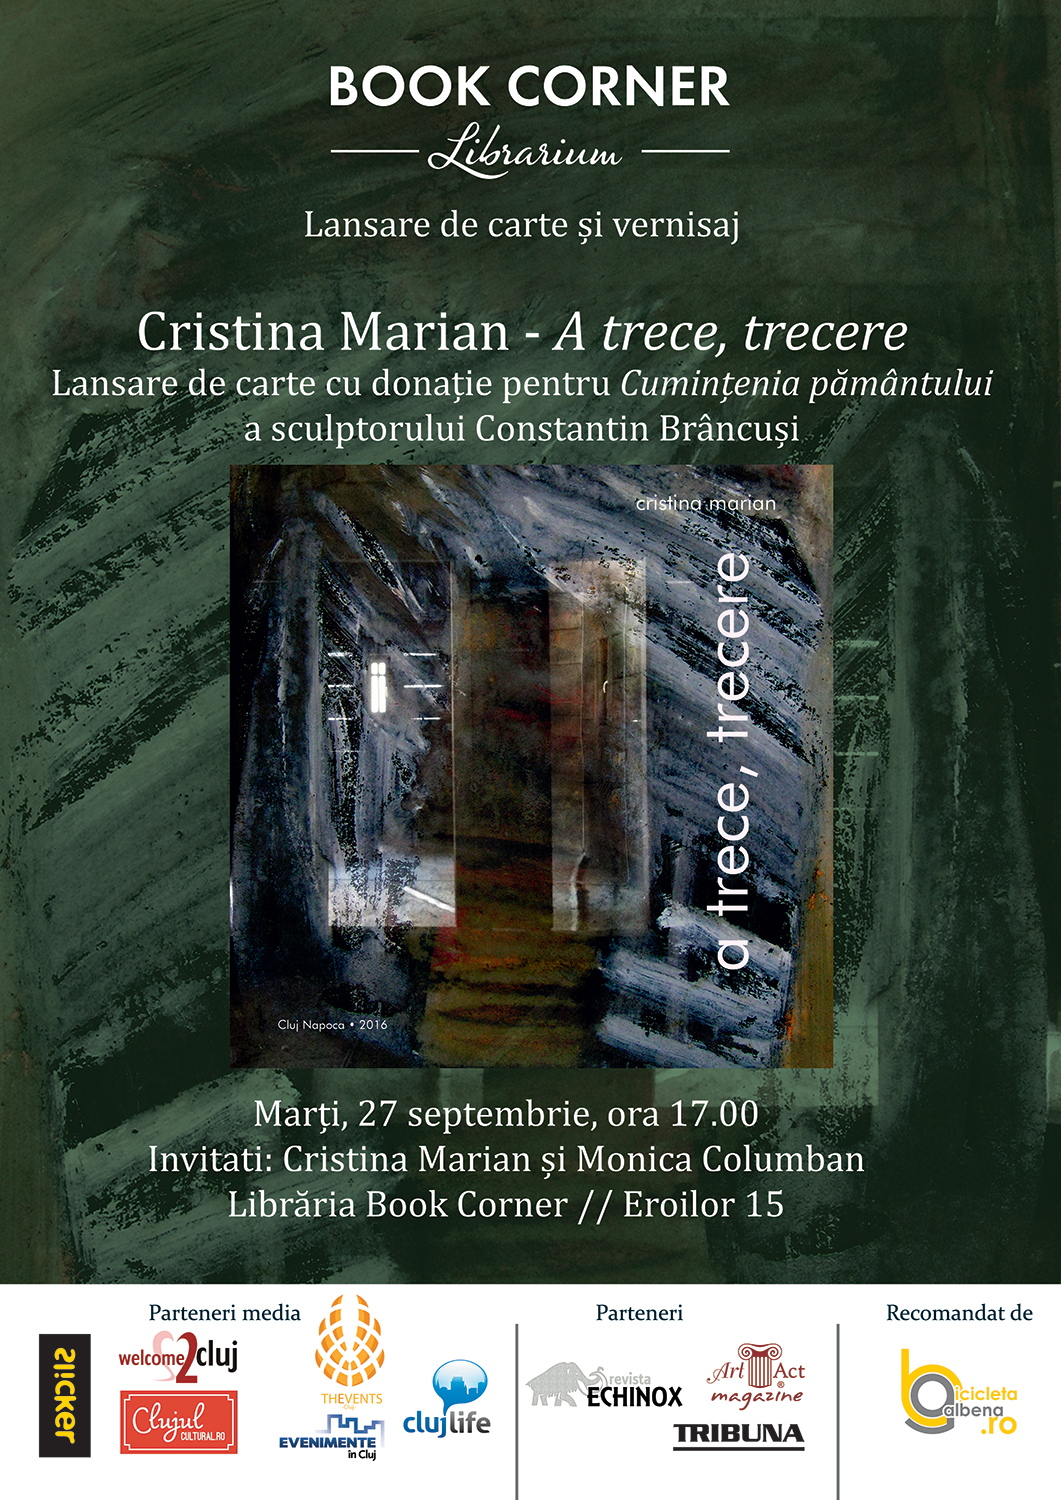 Cristina Marian - A trece, trecere